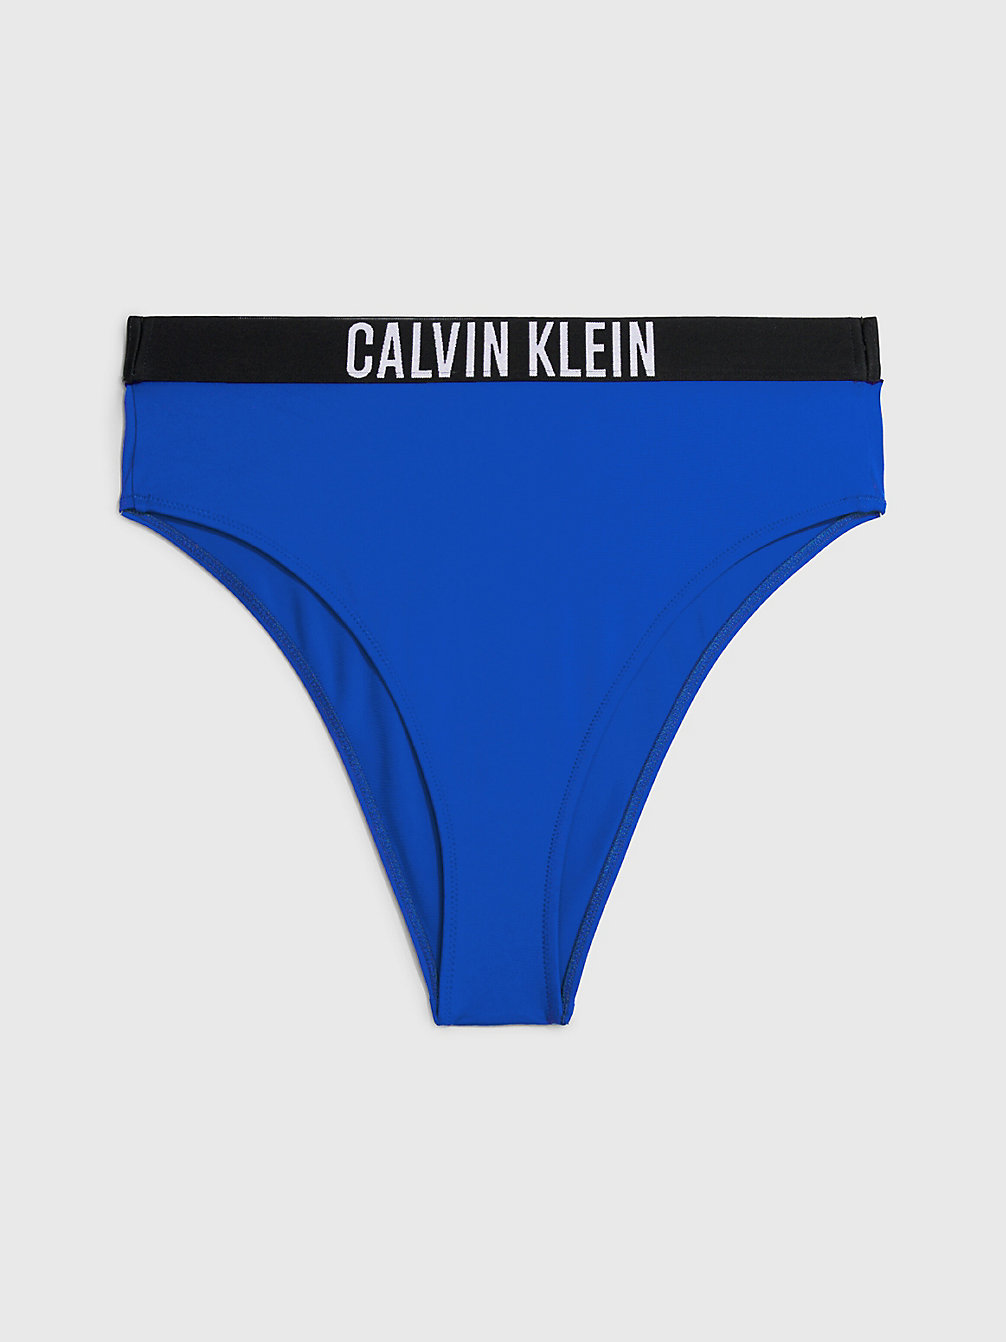 BISTRO BLUE > Dół Od Bikini Z Wysokim Stanem - Intense Power > undefined Kobiety - Calvin Klein